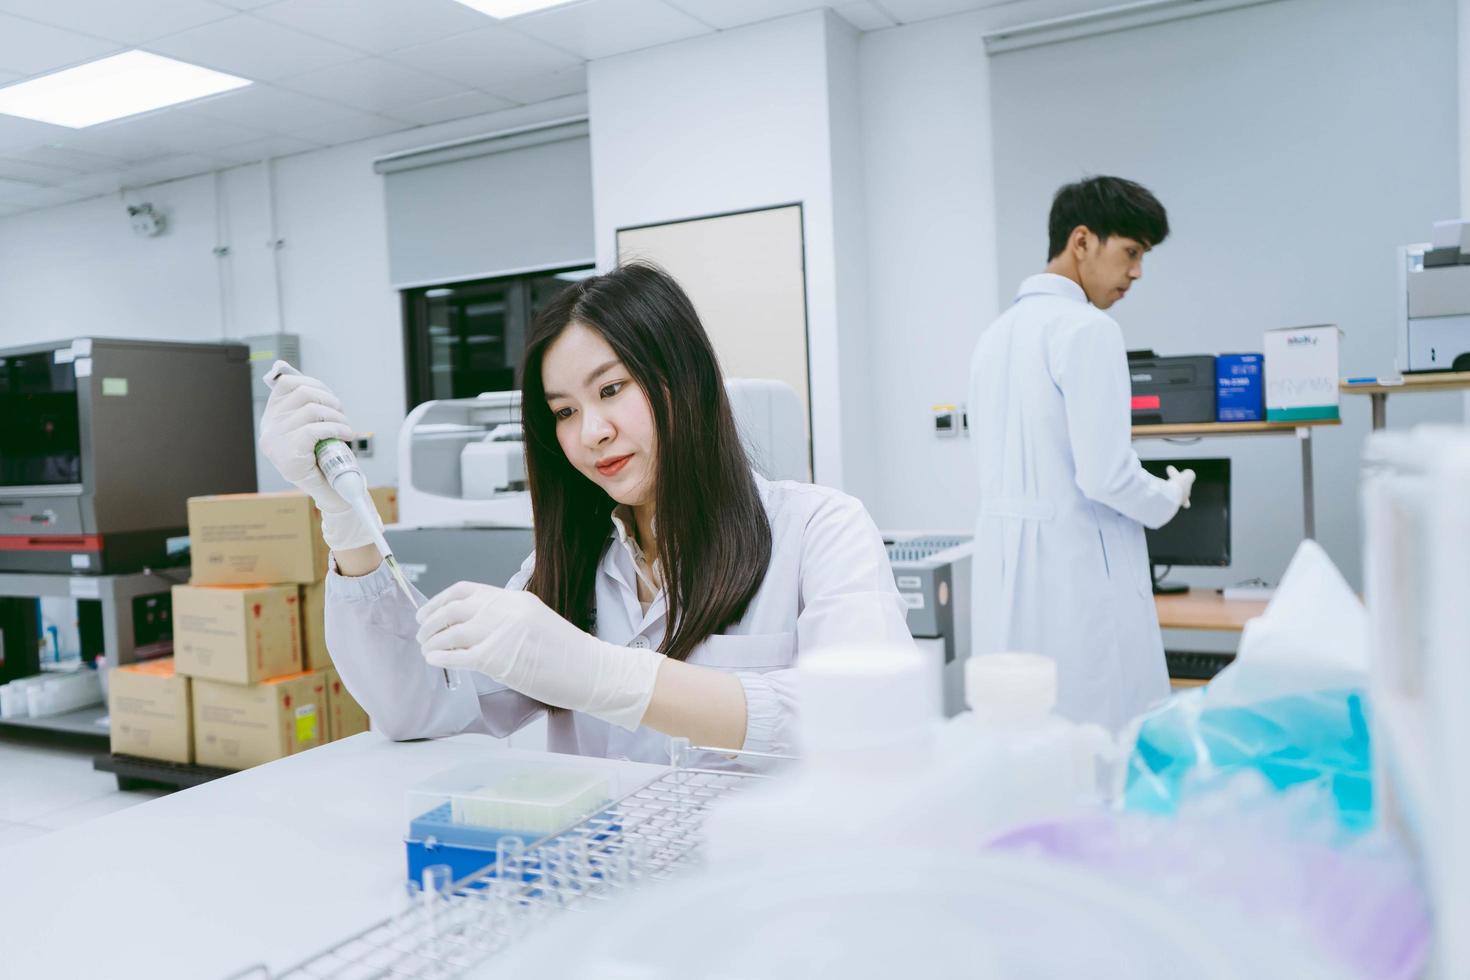 jonge medische wetenschapper die in een medisch laboratorium werkt, jonge vrouwelijke wetenschapper die een automatische pipet gebruikt om het monster over te brengen foto